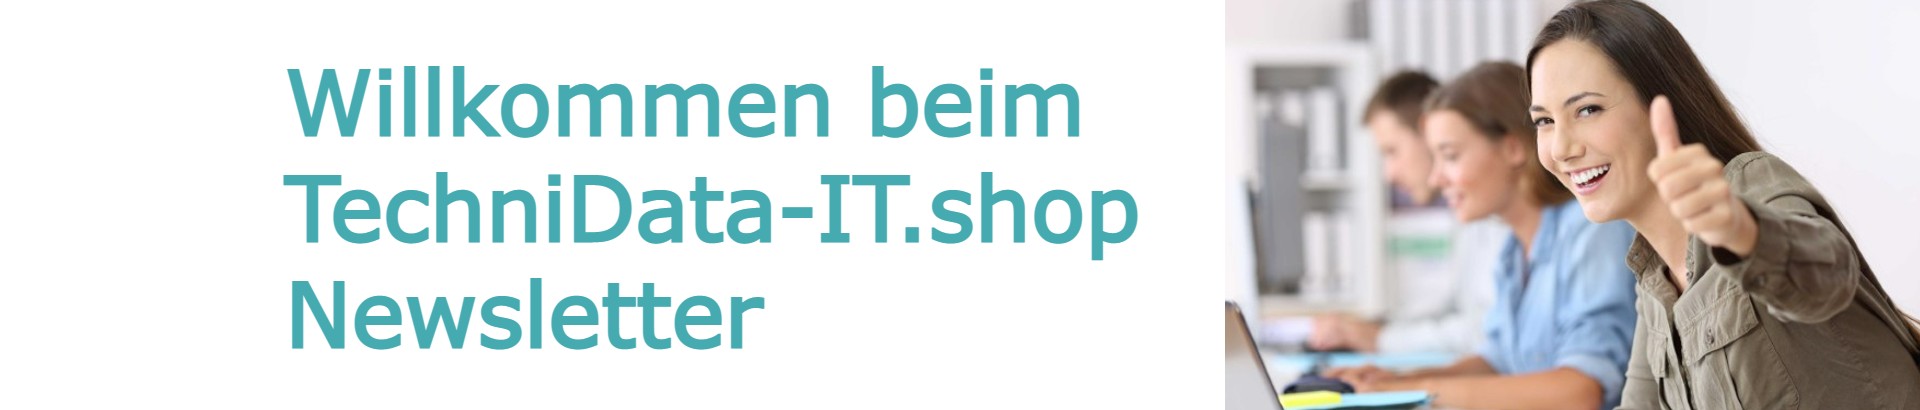 Willkommen zum Technidata-it.shop Newsletter